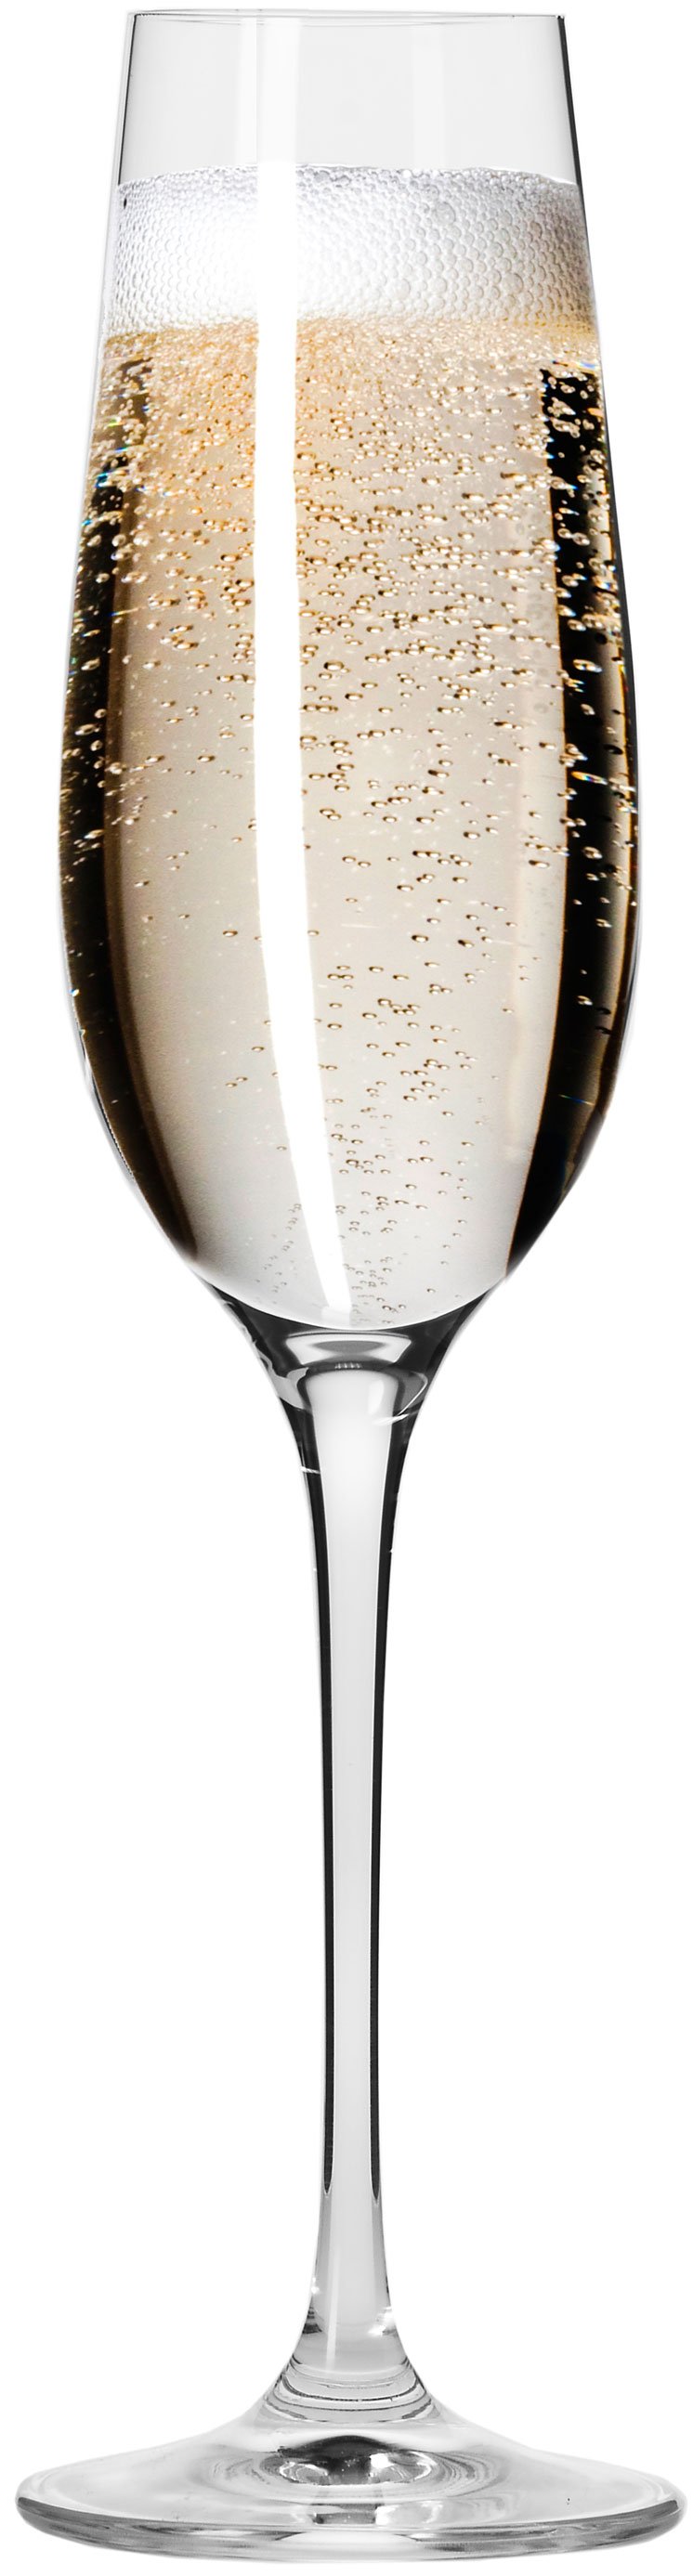 סט 6 כוסות שמפניה Krosno 180 מ"ל Harmony Collection Champagne Flute